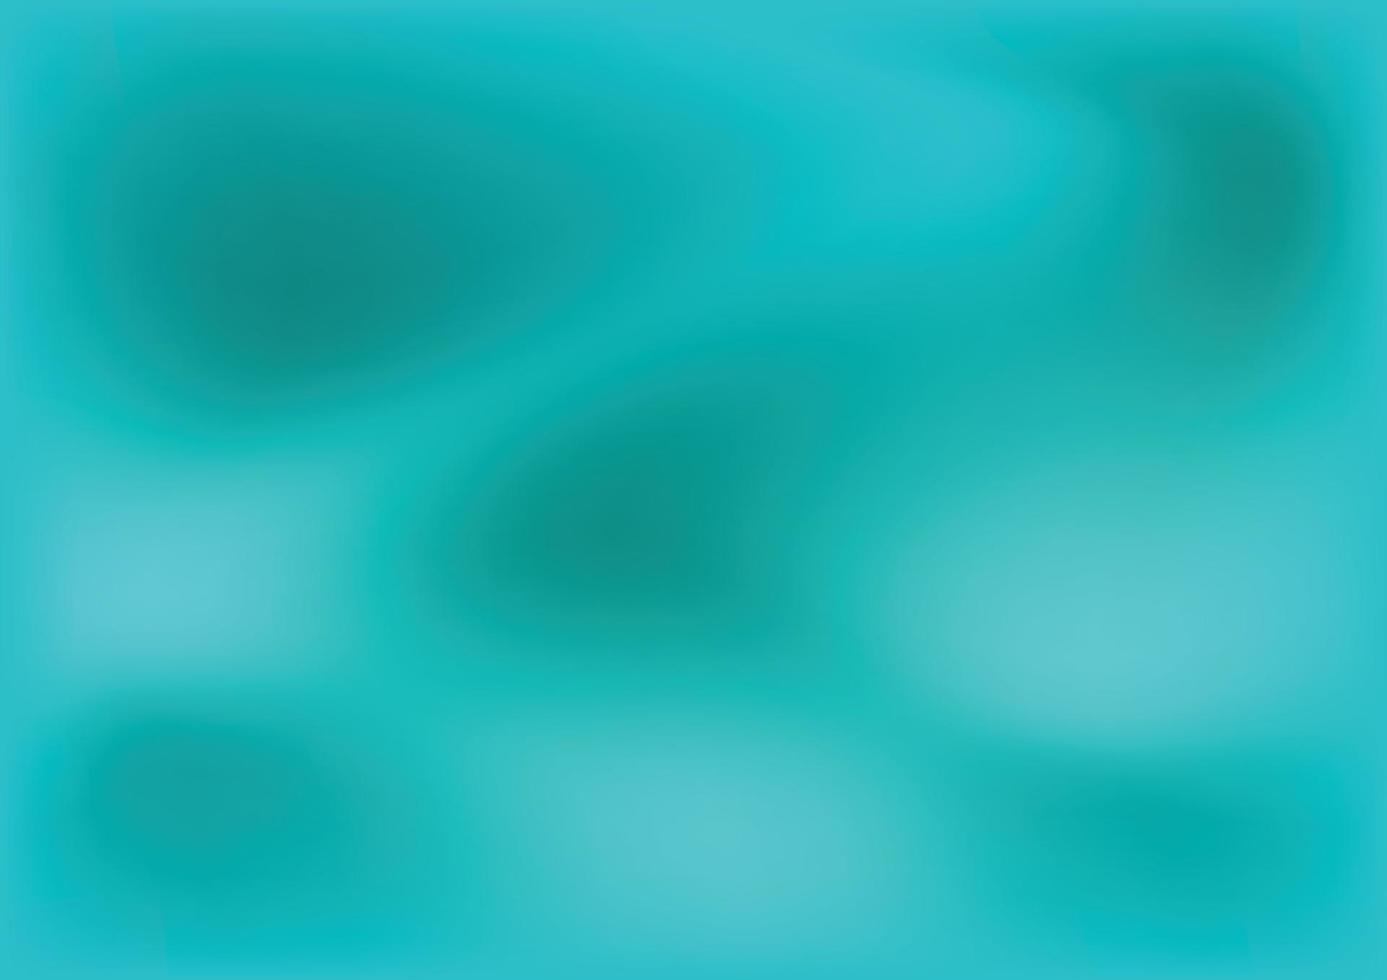 abstrakt blaugrün Hintergrund. verschwommen Türkis Wasser Hintergrund. Vektor Illustration zum Ihre Grafik Design.